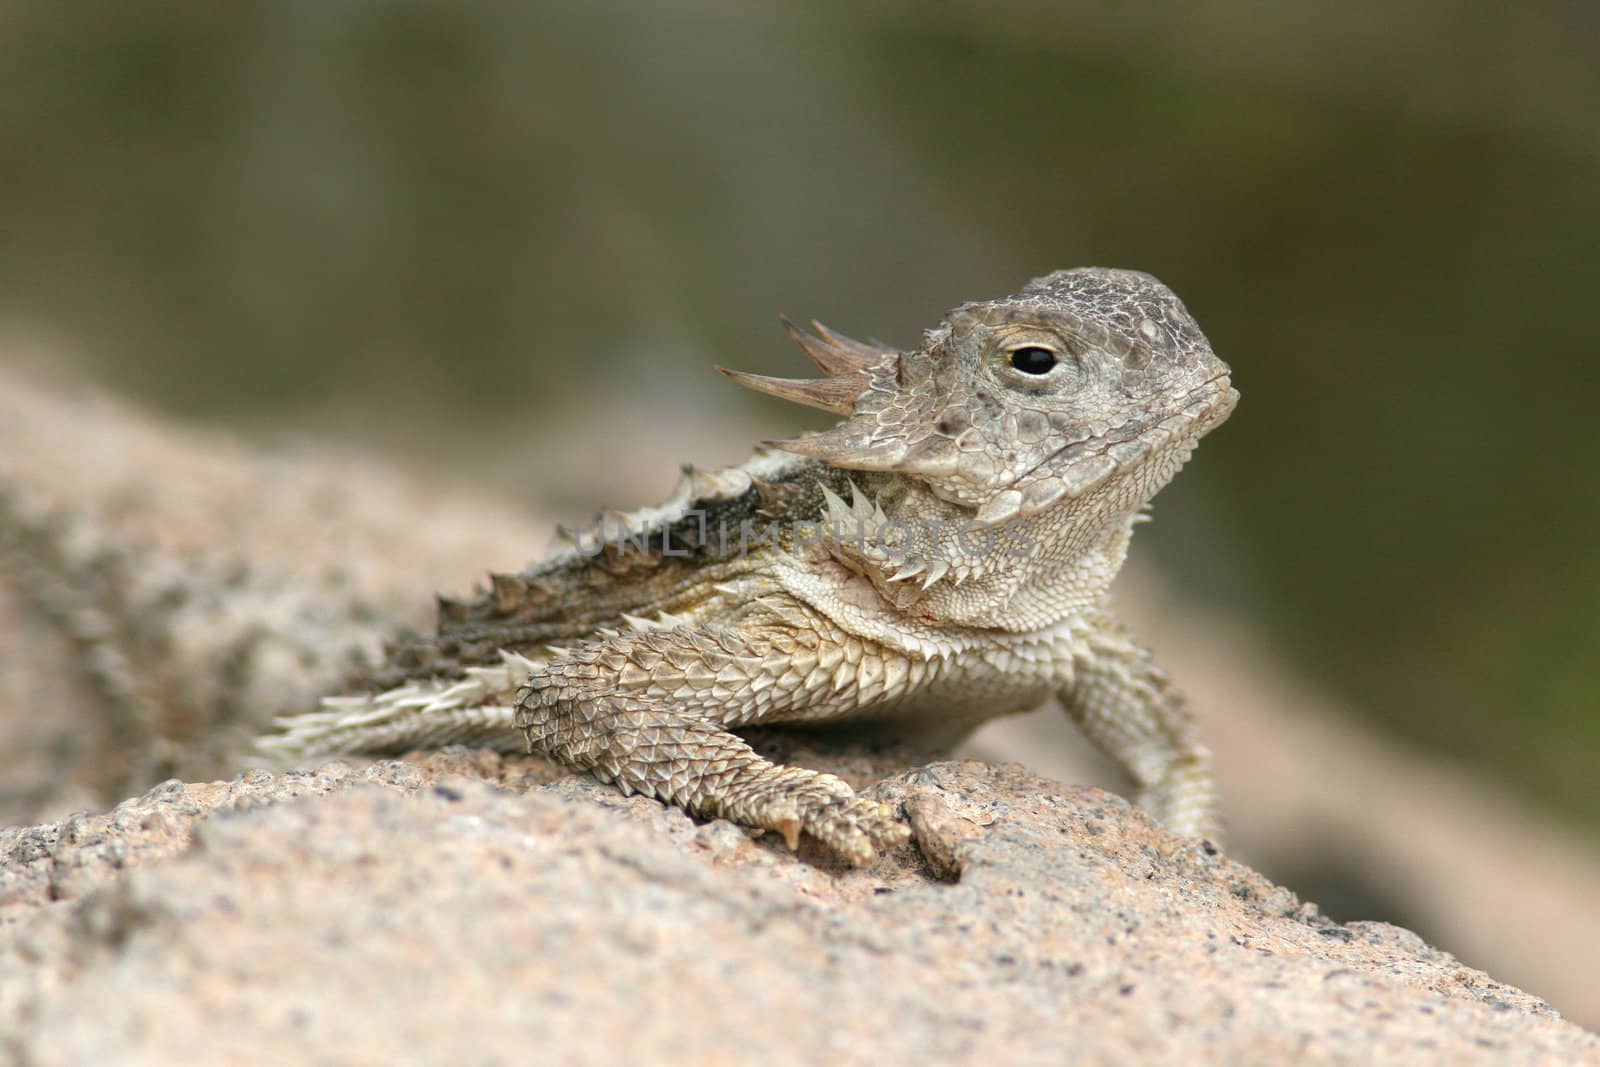 Desert Horned Lizard (Phrynosoma platyrhinos) - Sonoran Desert by gonepaddling